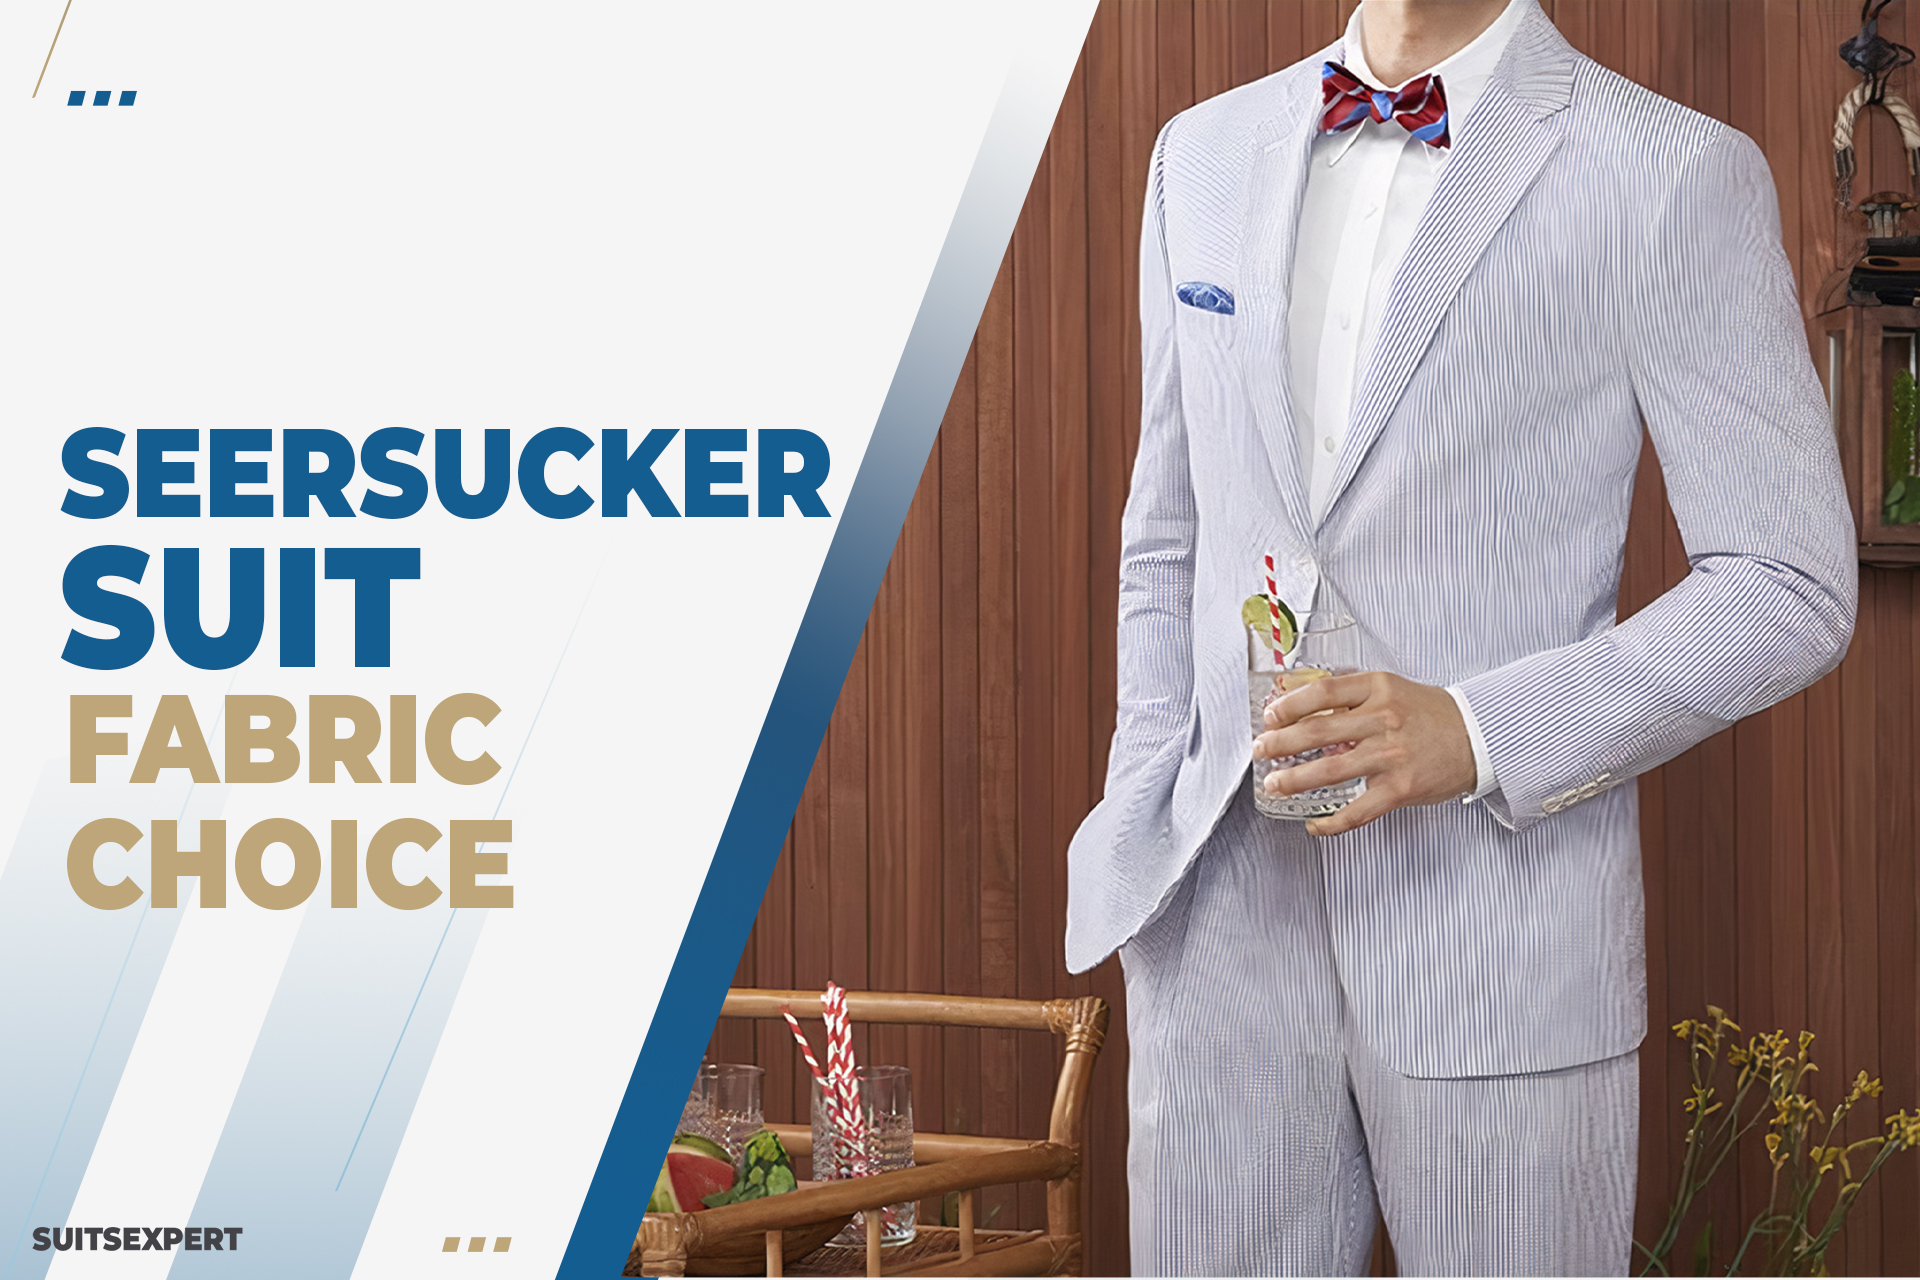 How to Wear a Seersucker Suit | The Suit Depot